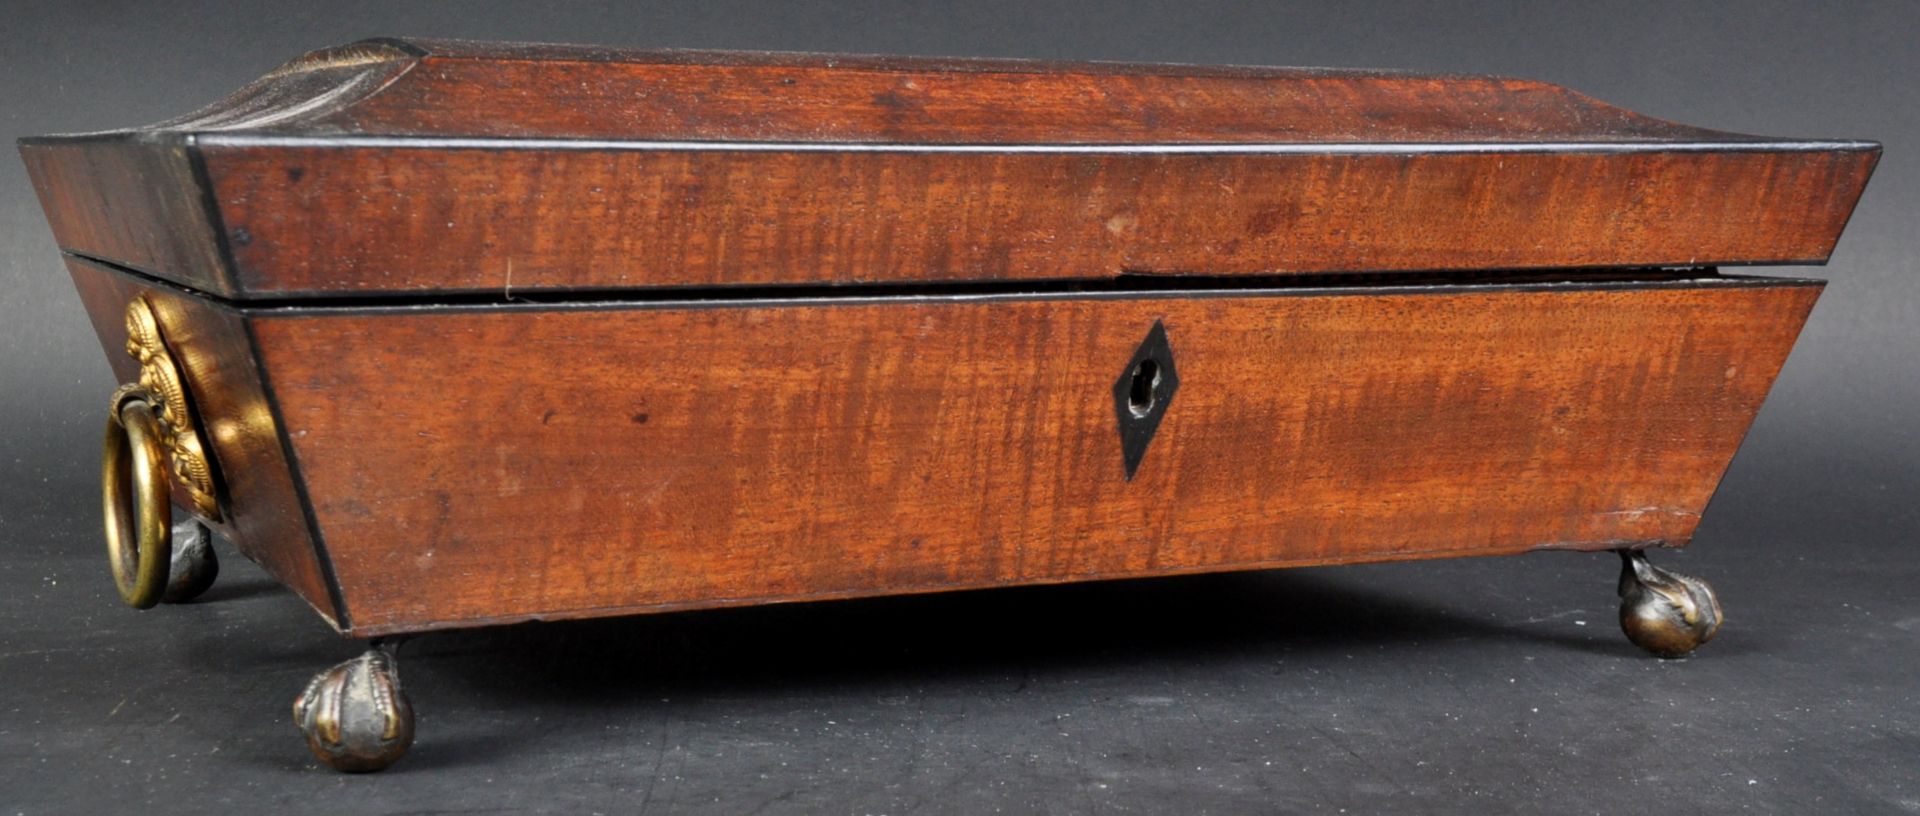 19TH CENTURY MAHOGANY TABLE BOX JEWELLERY CASKET